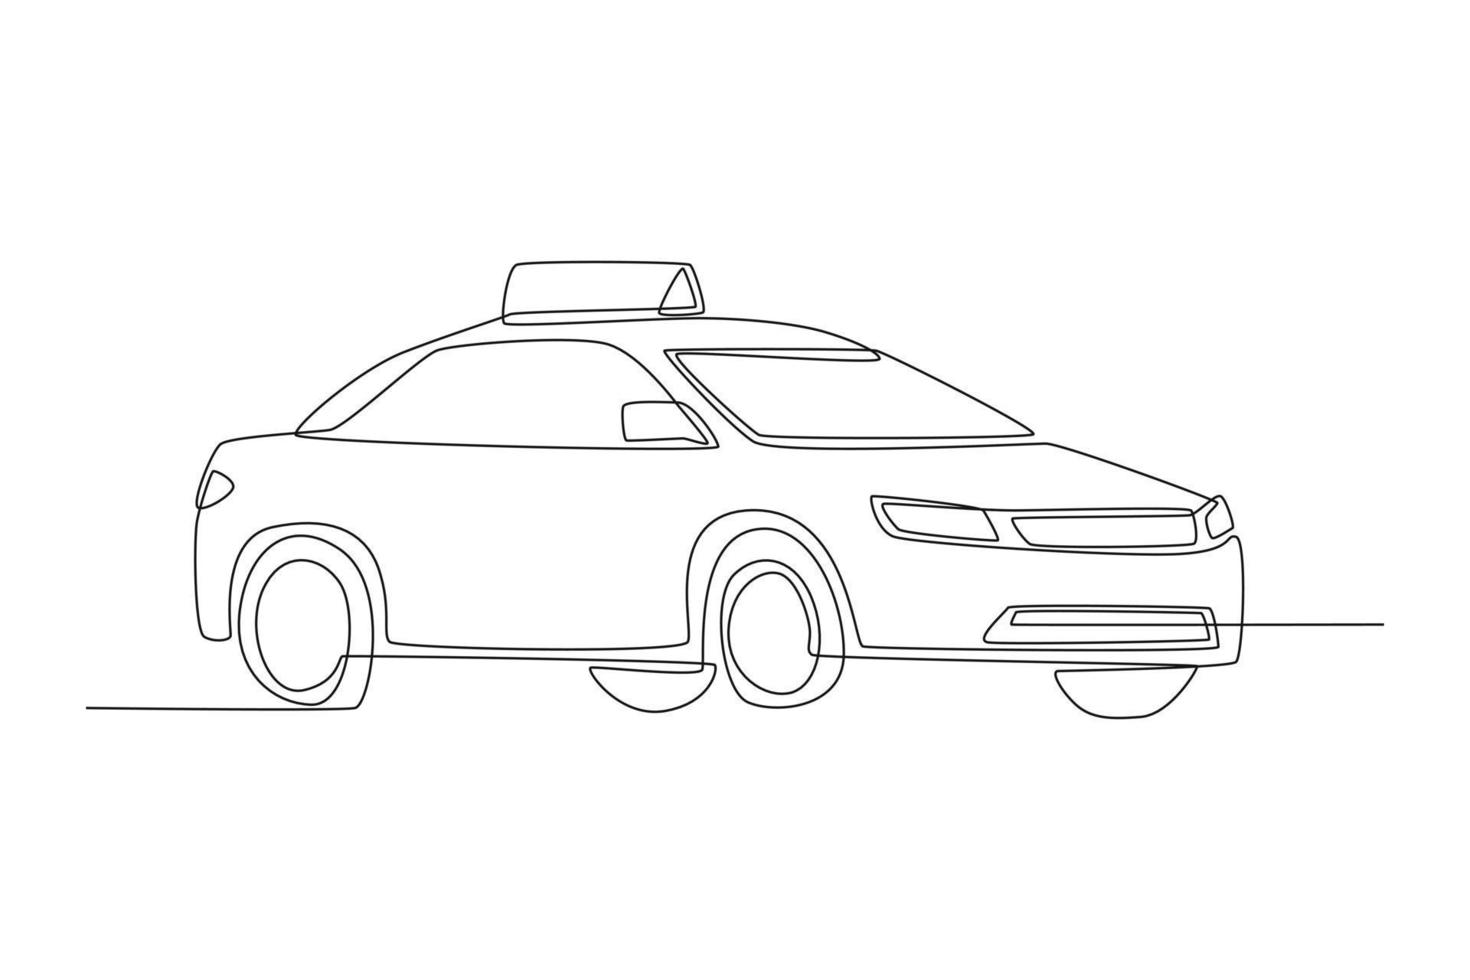 einzelne einzeilige zeichnung taxiauto mit dachschild. Straßen- und Verkehrskonzept. ununterbrochene Linie zeichnen grafische Vektorillustration des Designs. vektor